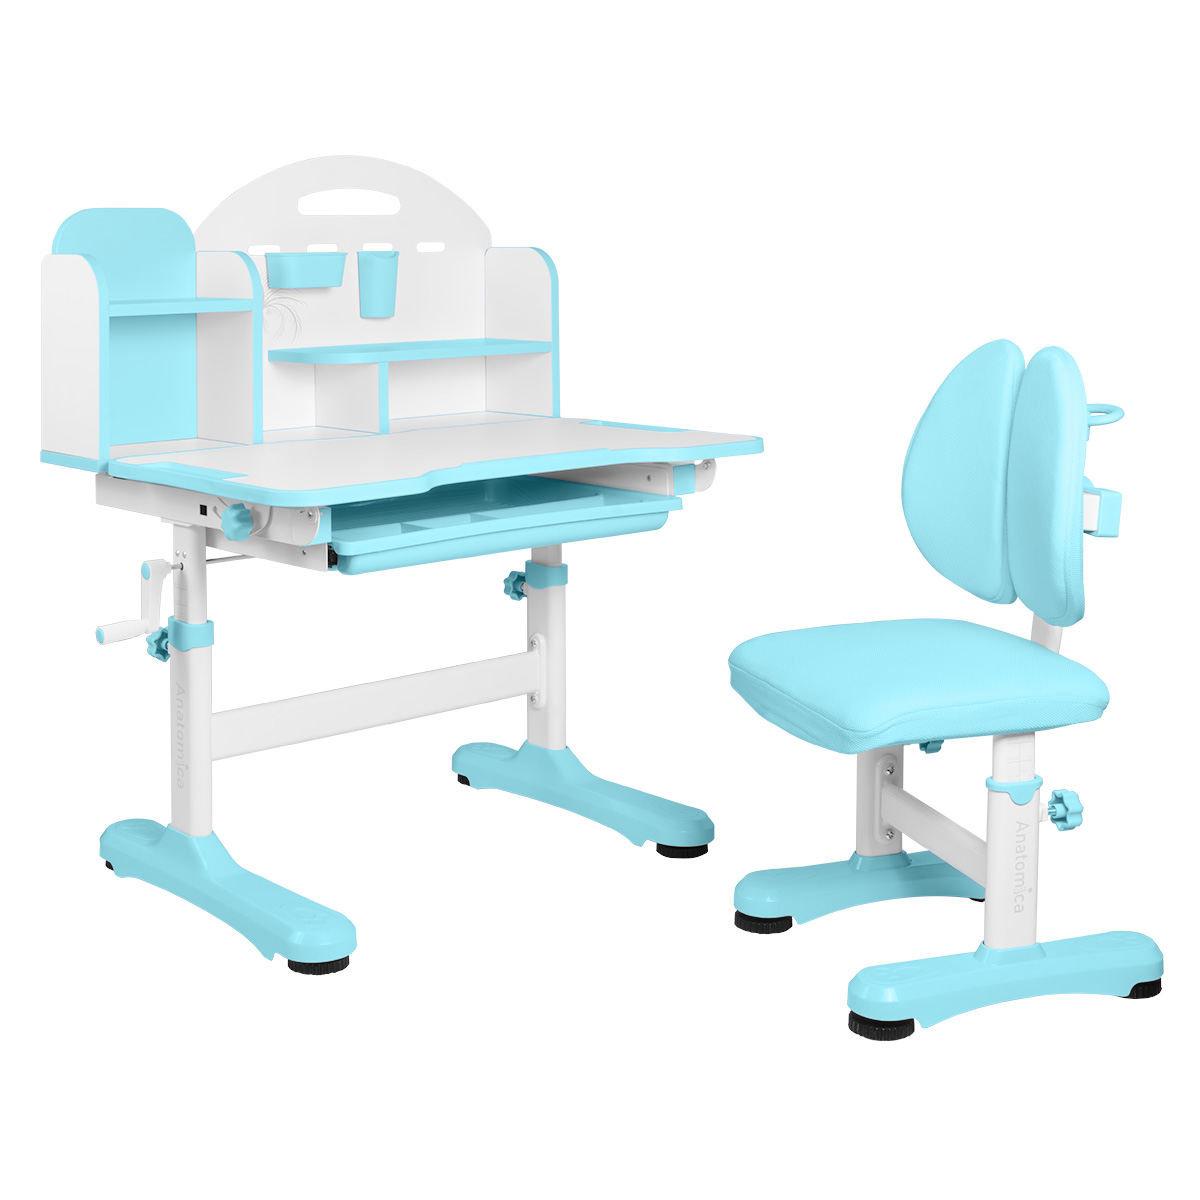 Комплект Anatomica Fiona парта, стул, надстройка, выдвижной ящик, голубой